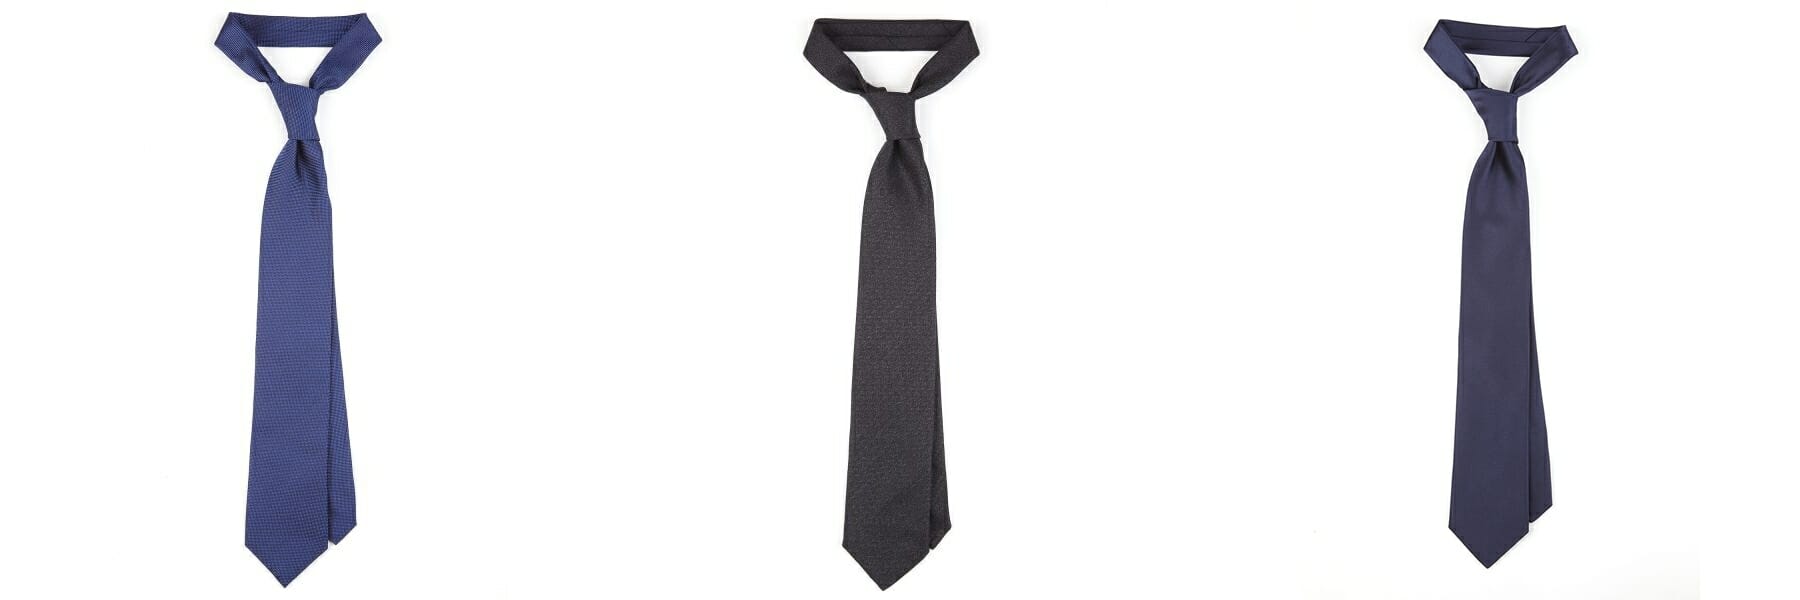 krawaty w stylu bonda